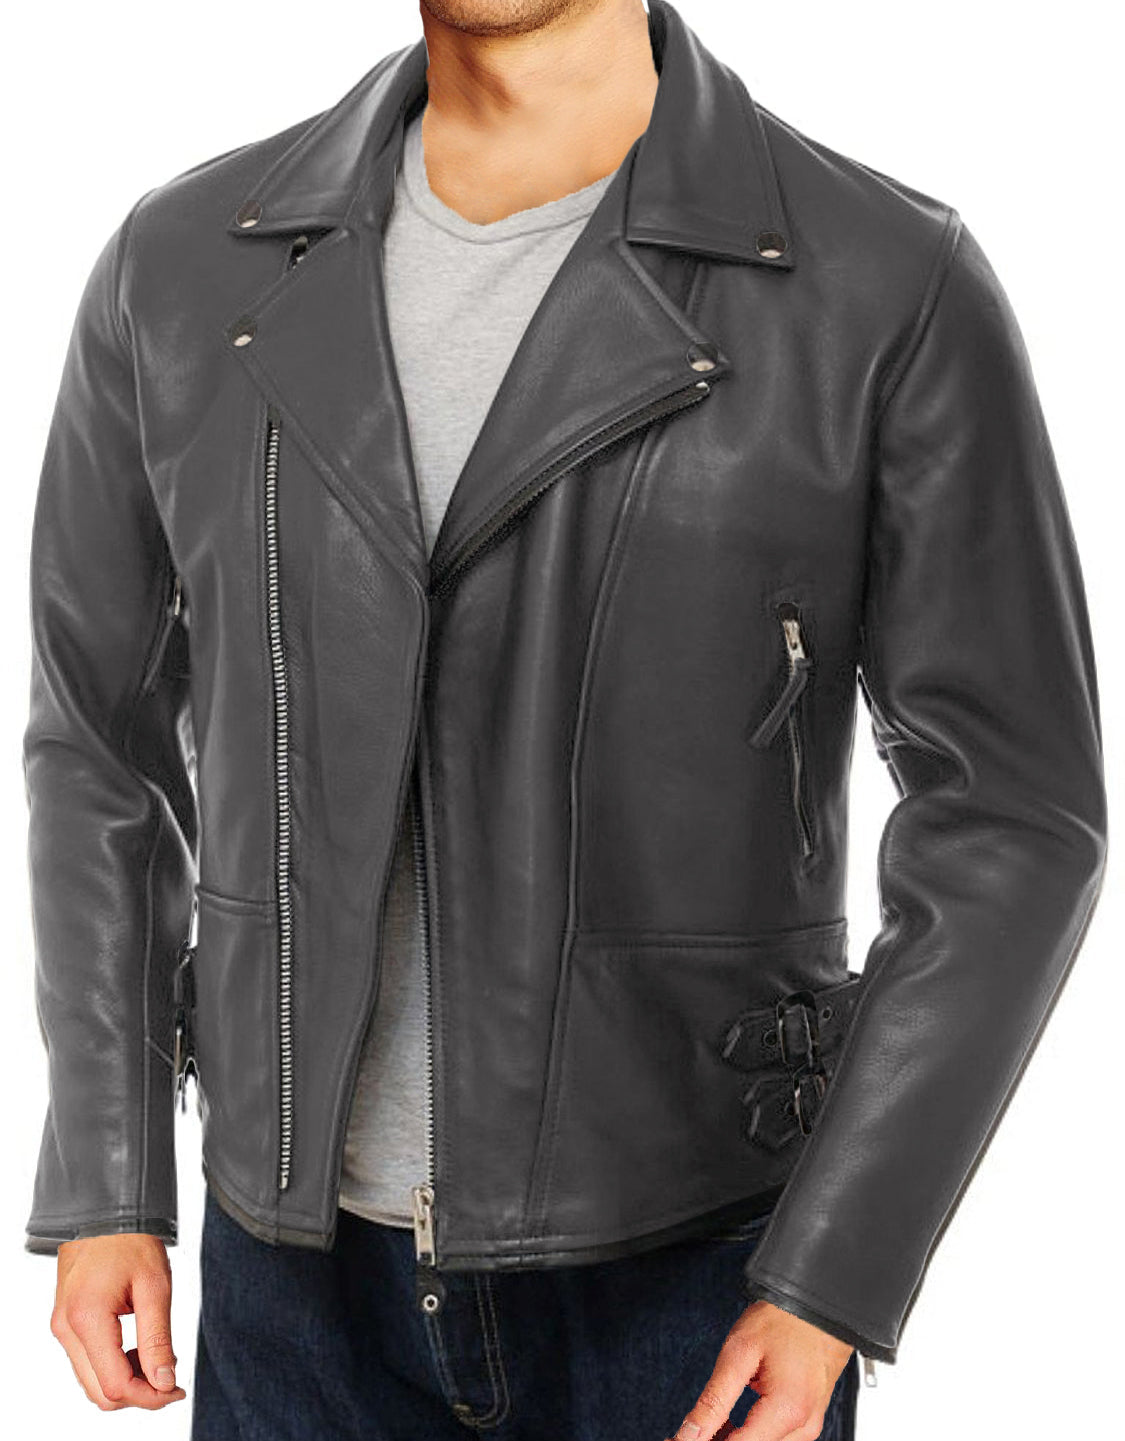 Leather Jackets Hub Mens Genuine Lambskin Leather Jacket (Black, Double Rider Jacket) - 1501104